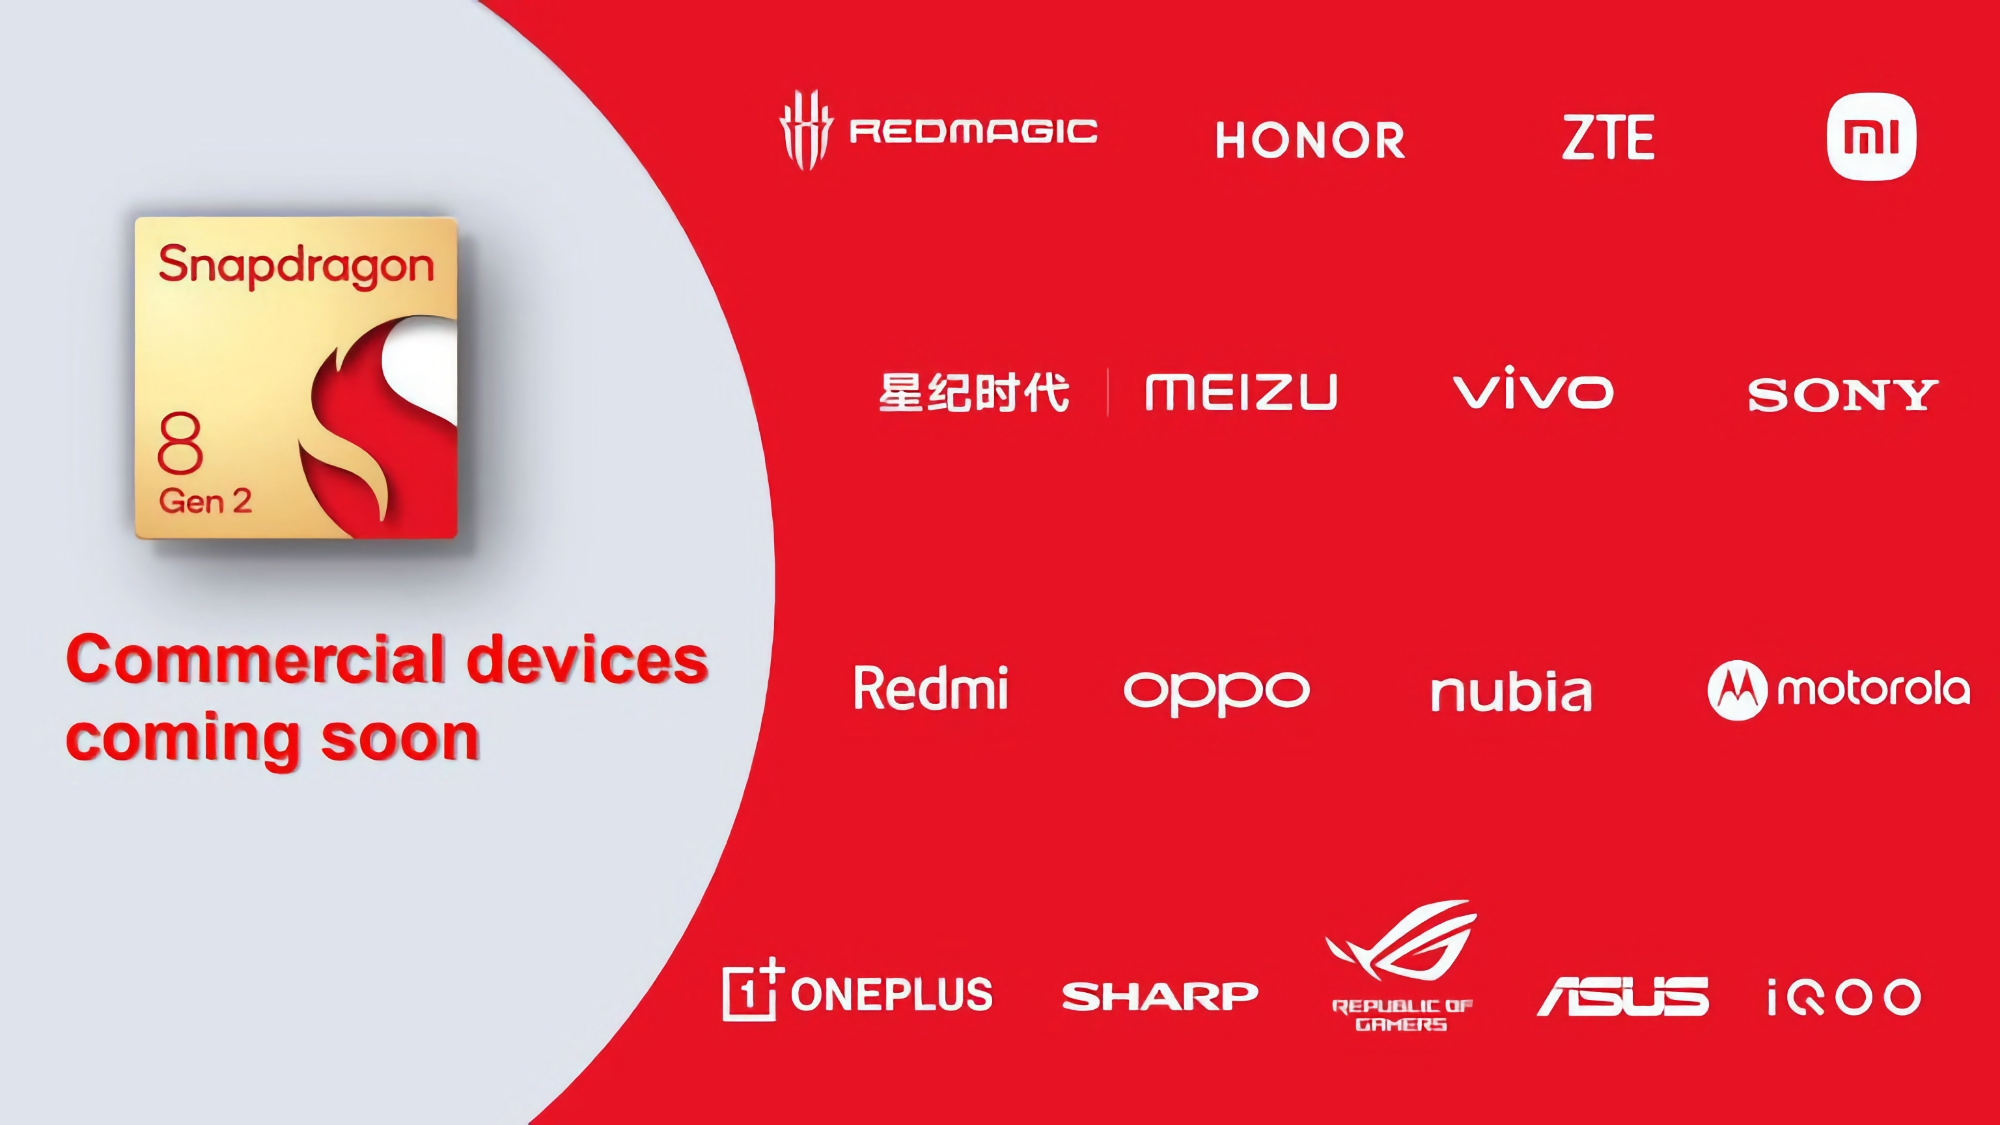 ASUS ROG, Honor, Sony, Motorola, ZTE, OnePlus, OPPO i więcej: lista producentów smartfonów z Androidem, którzy wykorzystają nowy układ Snapdragon 8 Gen 2